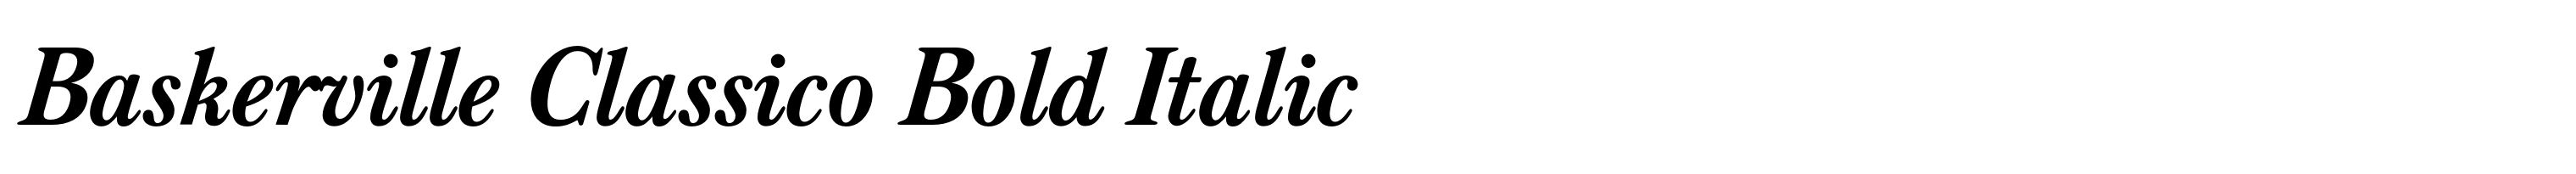 Baskerville Classico Bold Italic